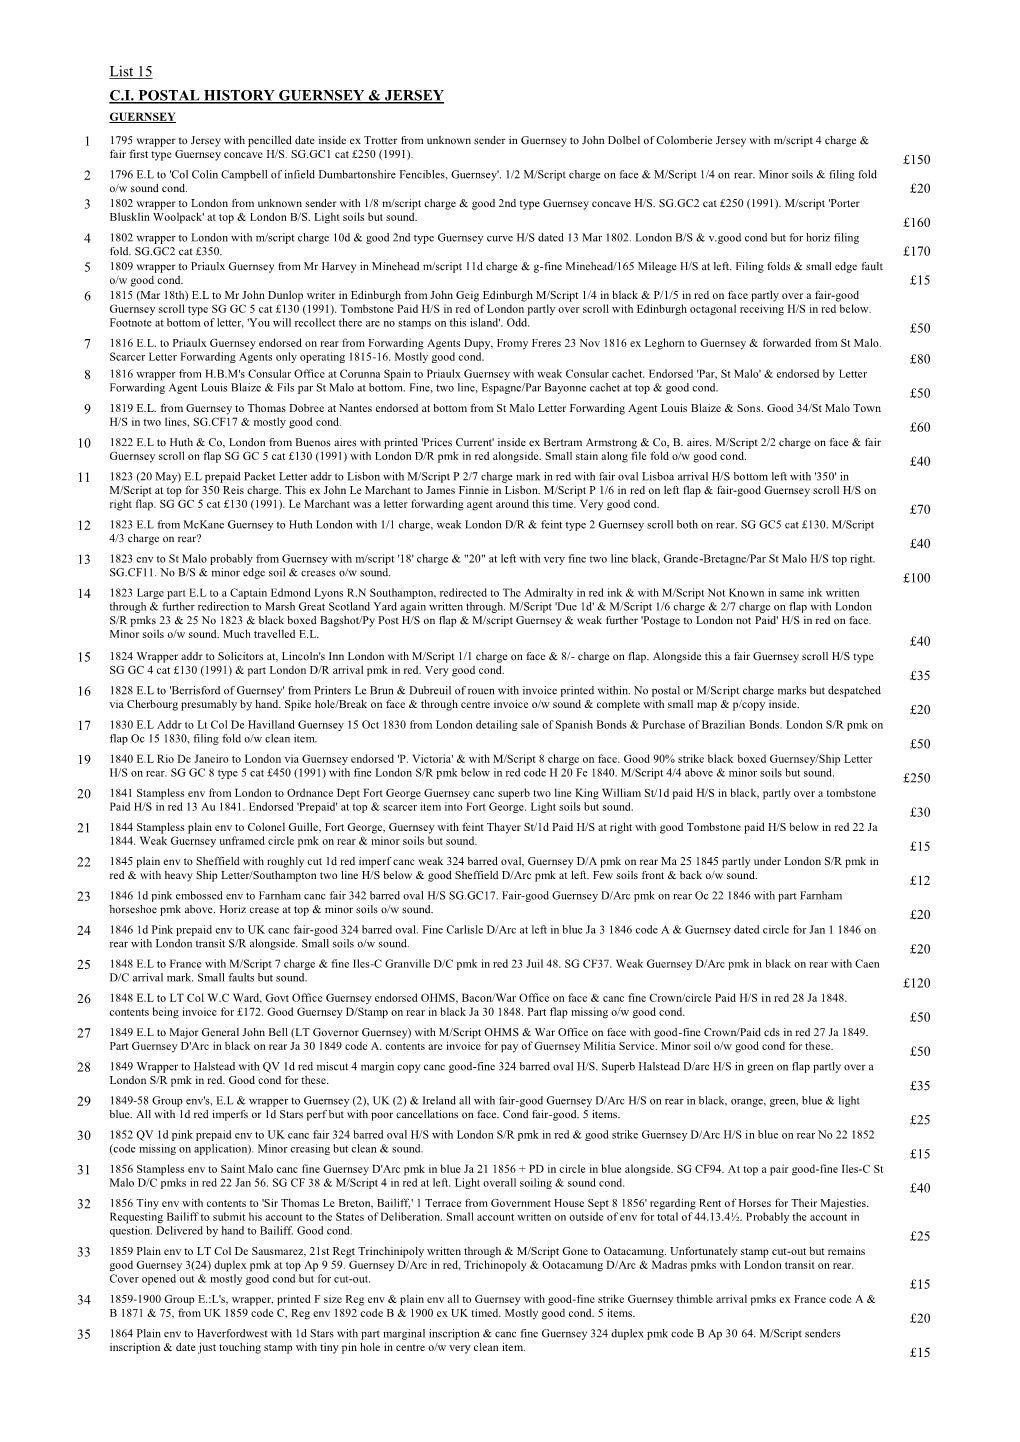 List 15 C.I. POSTAL HISTORY GUERNSEY & JERSEY